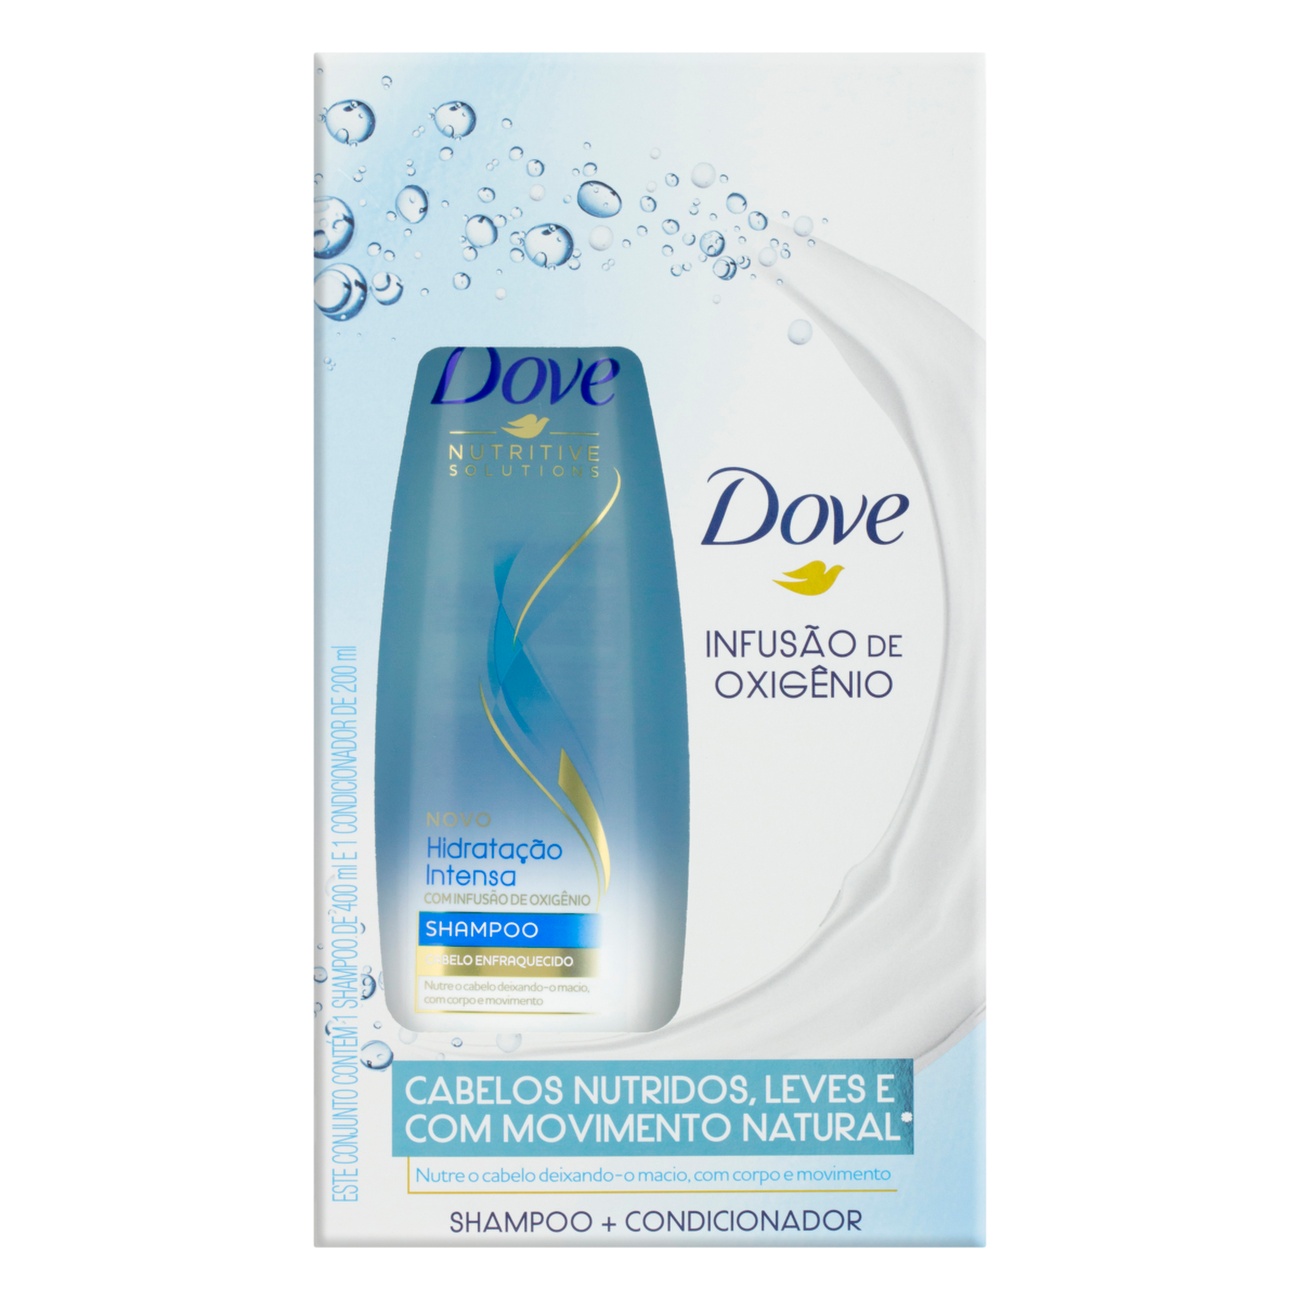 Oferta Shampoo Dove Hidratação Intensa 400ml + Condicionador 200ml